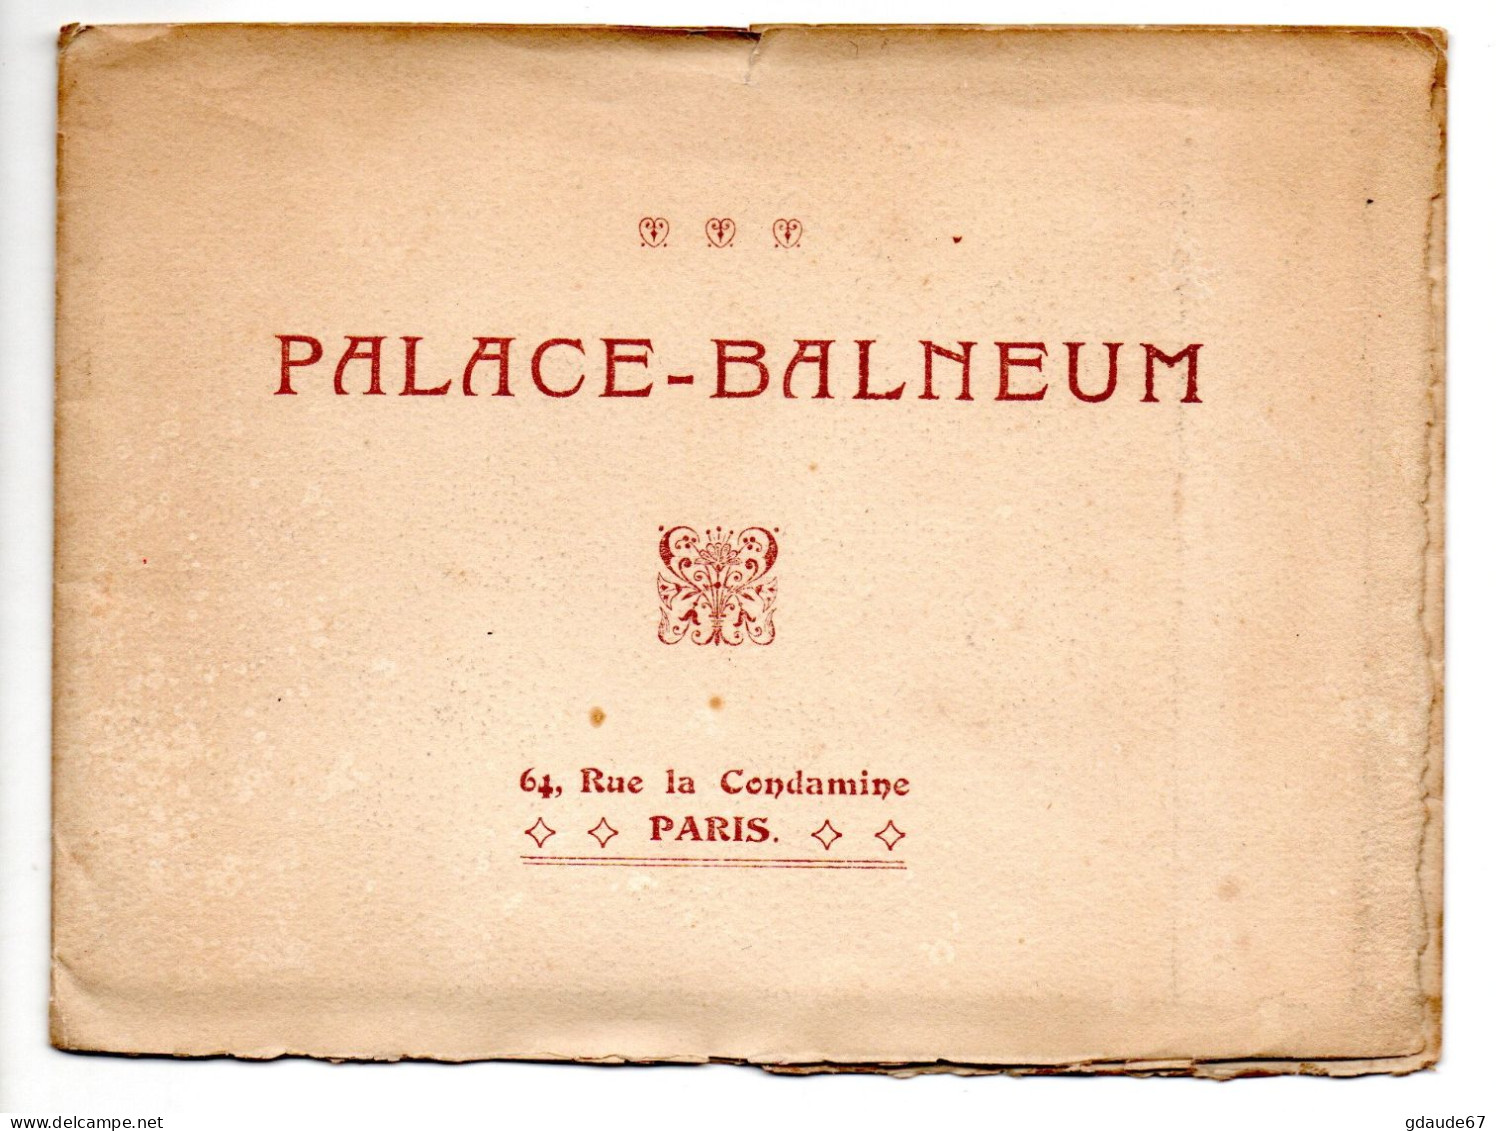 PARIS 17 - PALACE BALNEUM - 64 RUE DE LA CONDAMINE - DEPLIANT PUBLICITAIRE (FORMAT REPLIE ~15.5x11.5cm) - Paris (17)